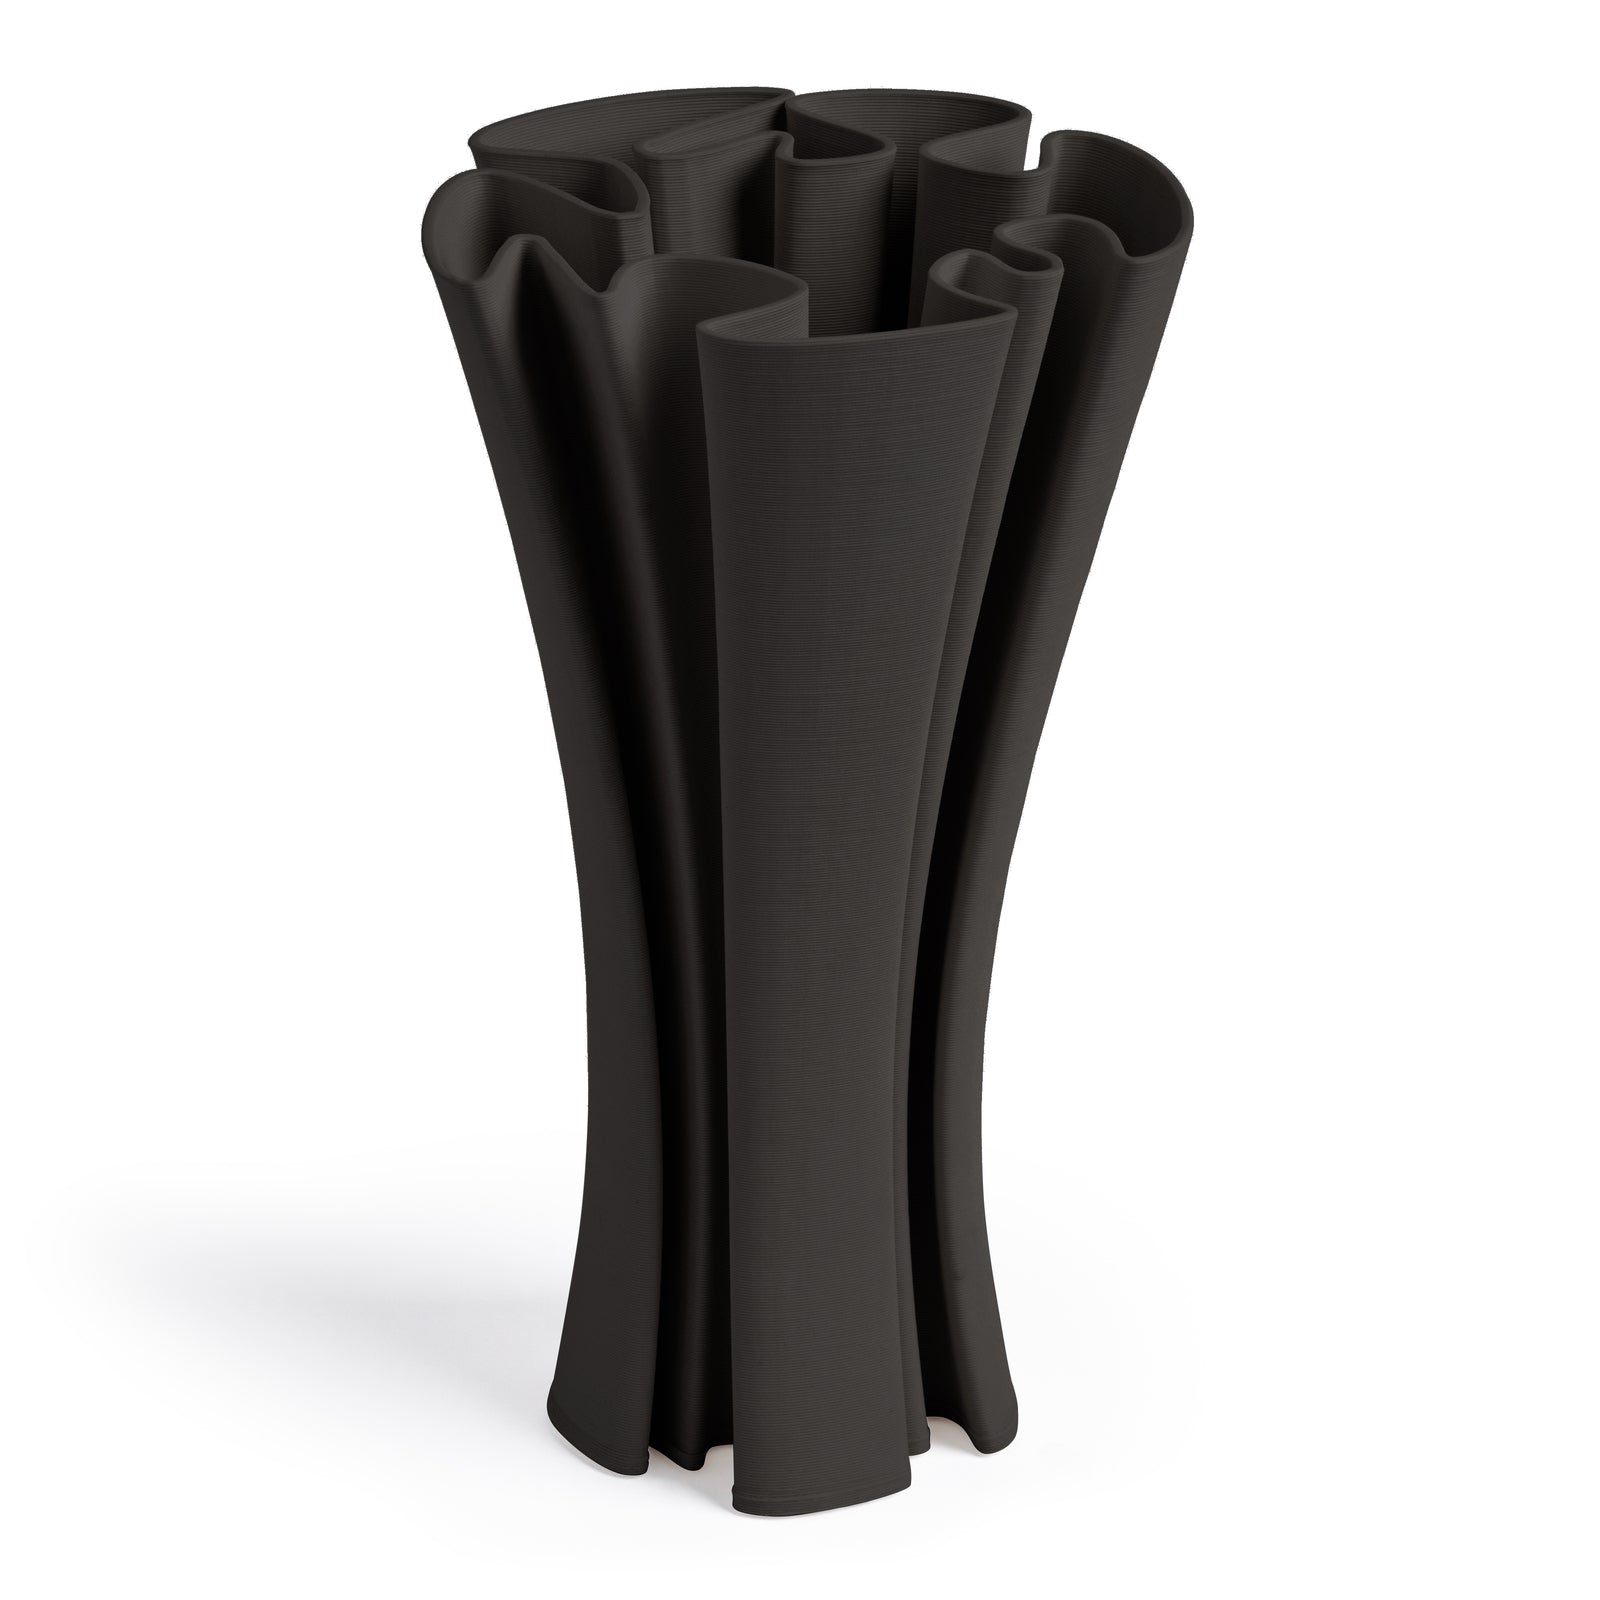 MILLIE Black Vase 36cm